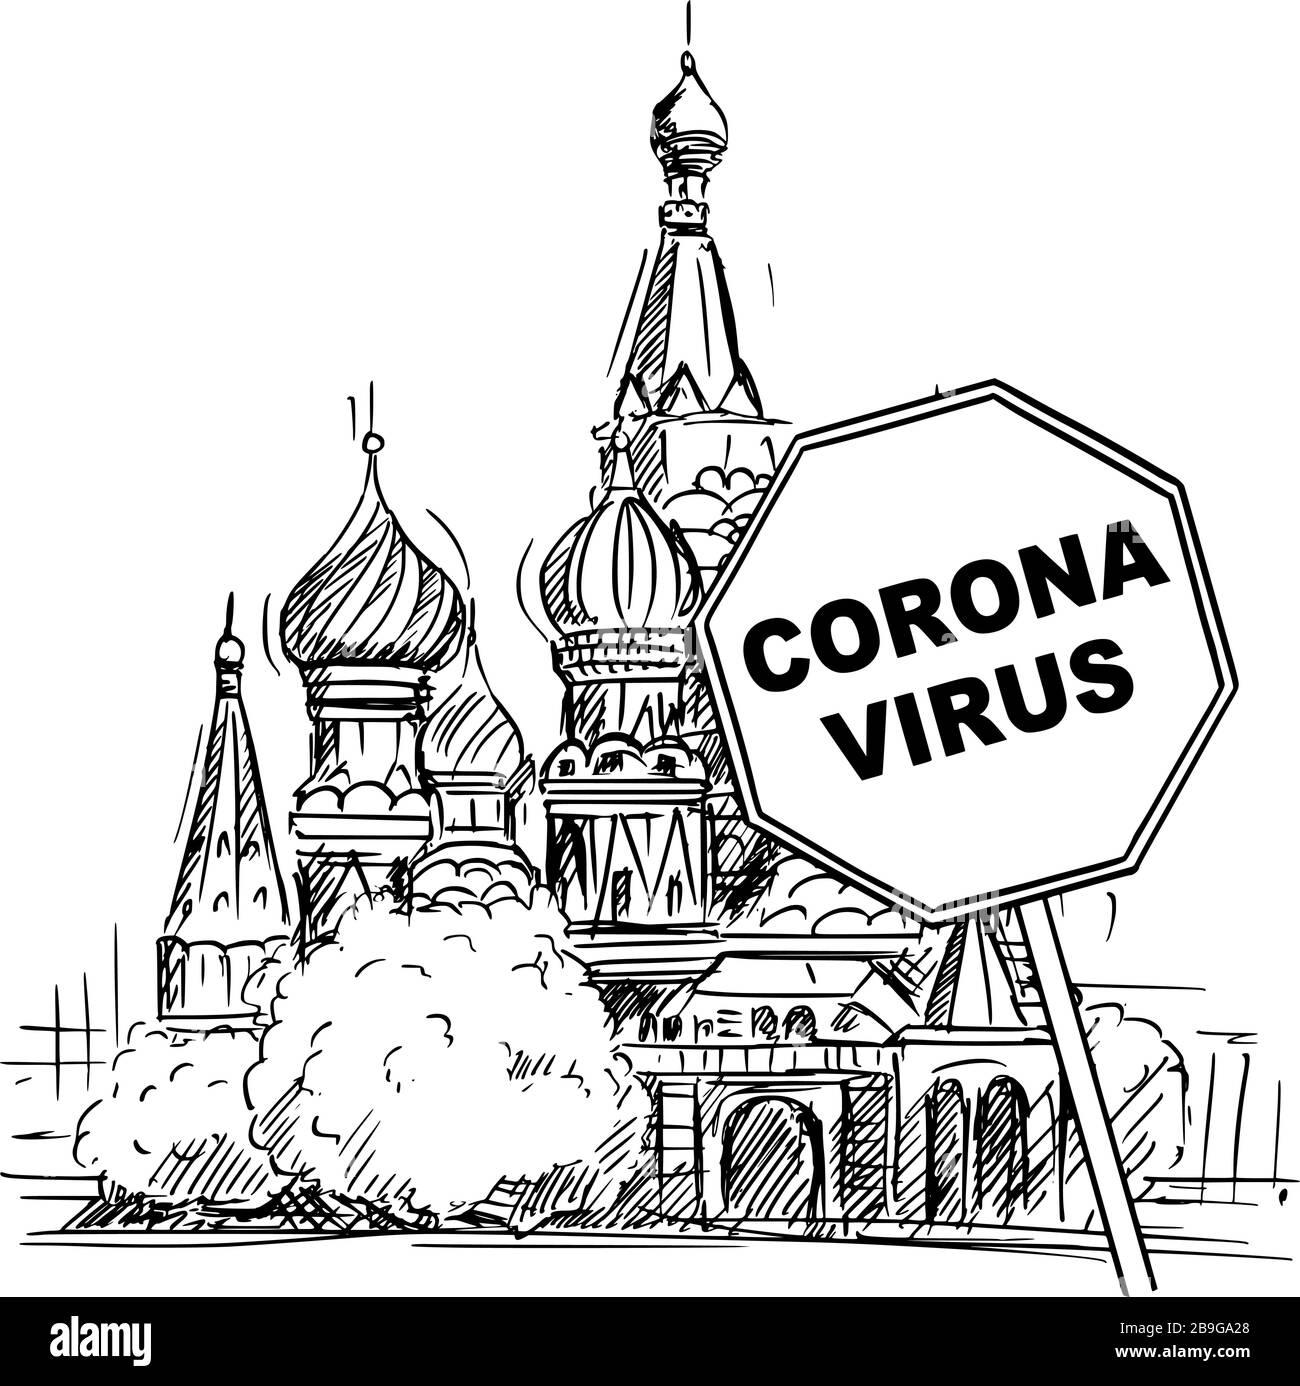 Vektor-Cartoon skizziert grobe Darstellung der russischen Föderation, Moskau, der Kathedrale von Saint Basil und Coronavirus kovid-19 Virus-Epidemie-Warnzeichen. Stock Vektor